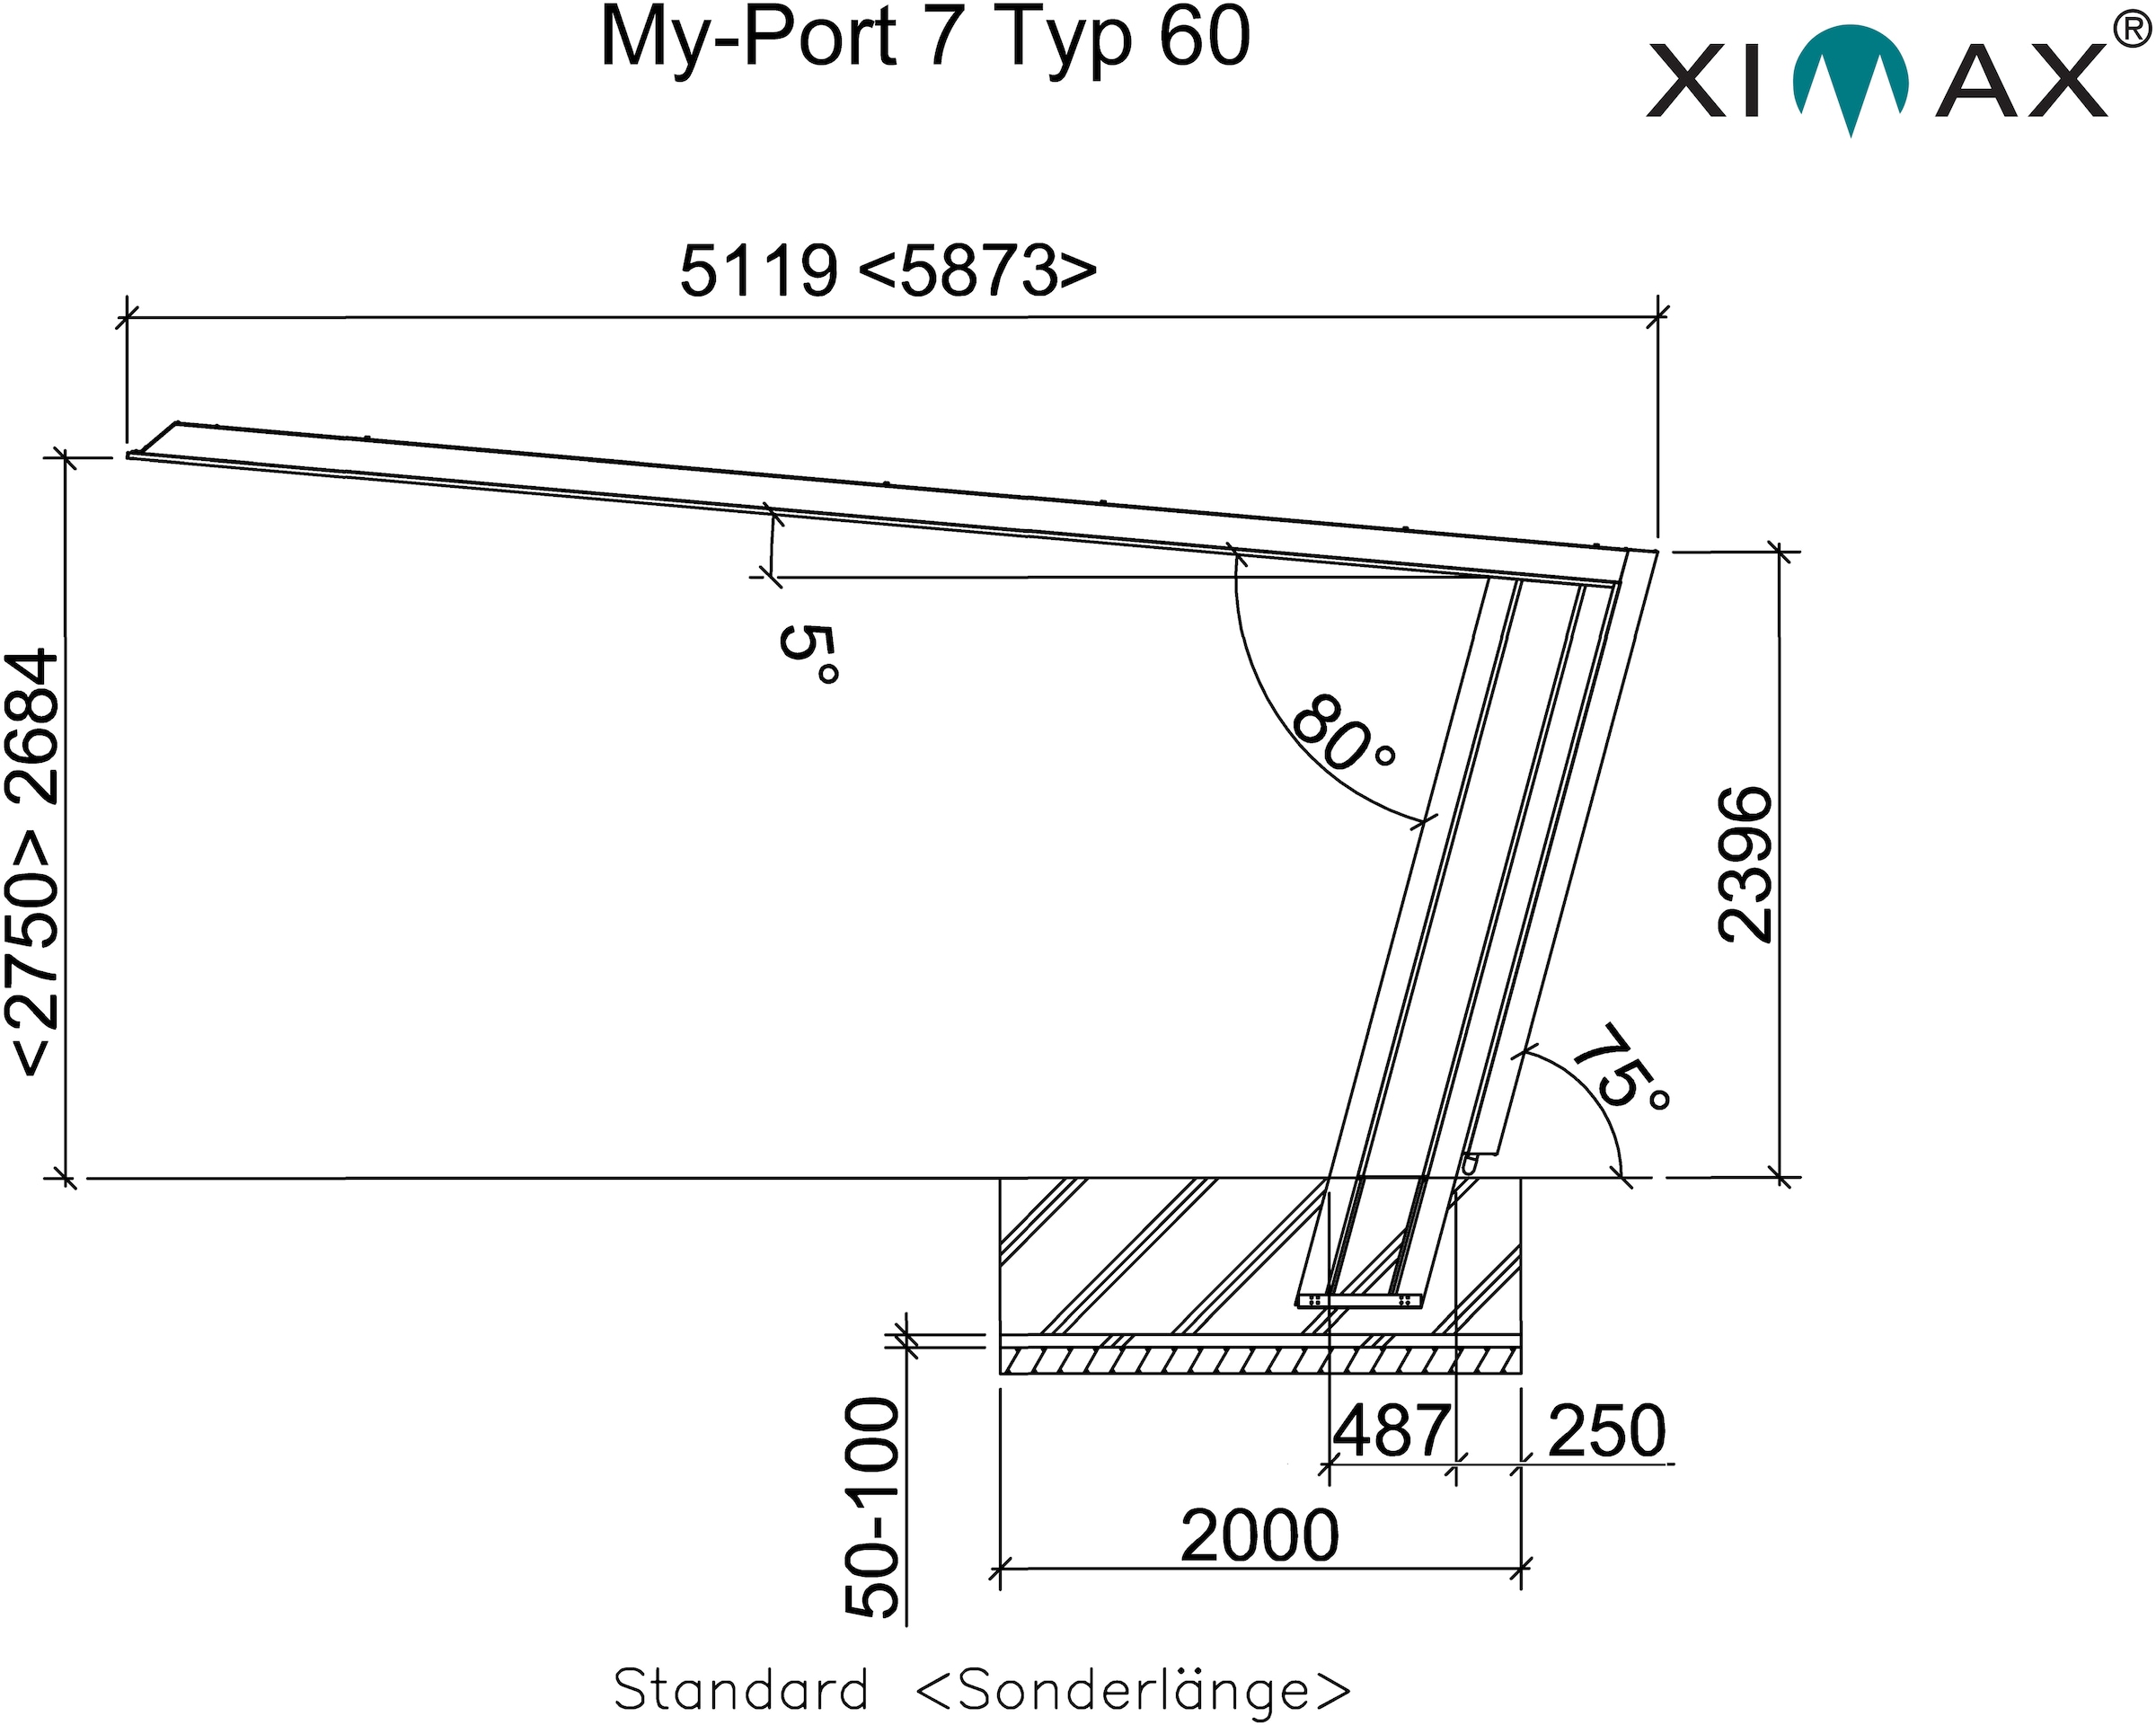 Ximax Einzelcarport »My-Port 7 Typ BAUR Aluminium, Rechnung schwarz-silber, per Standard-schwarz/silber«, Aluminium 2759 cm, Typ 60 209 